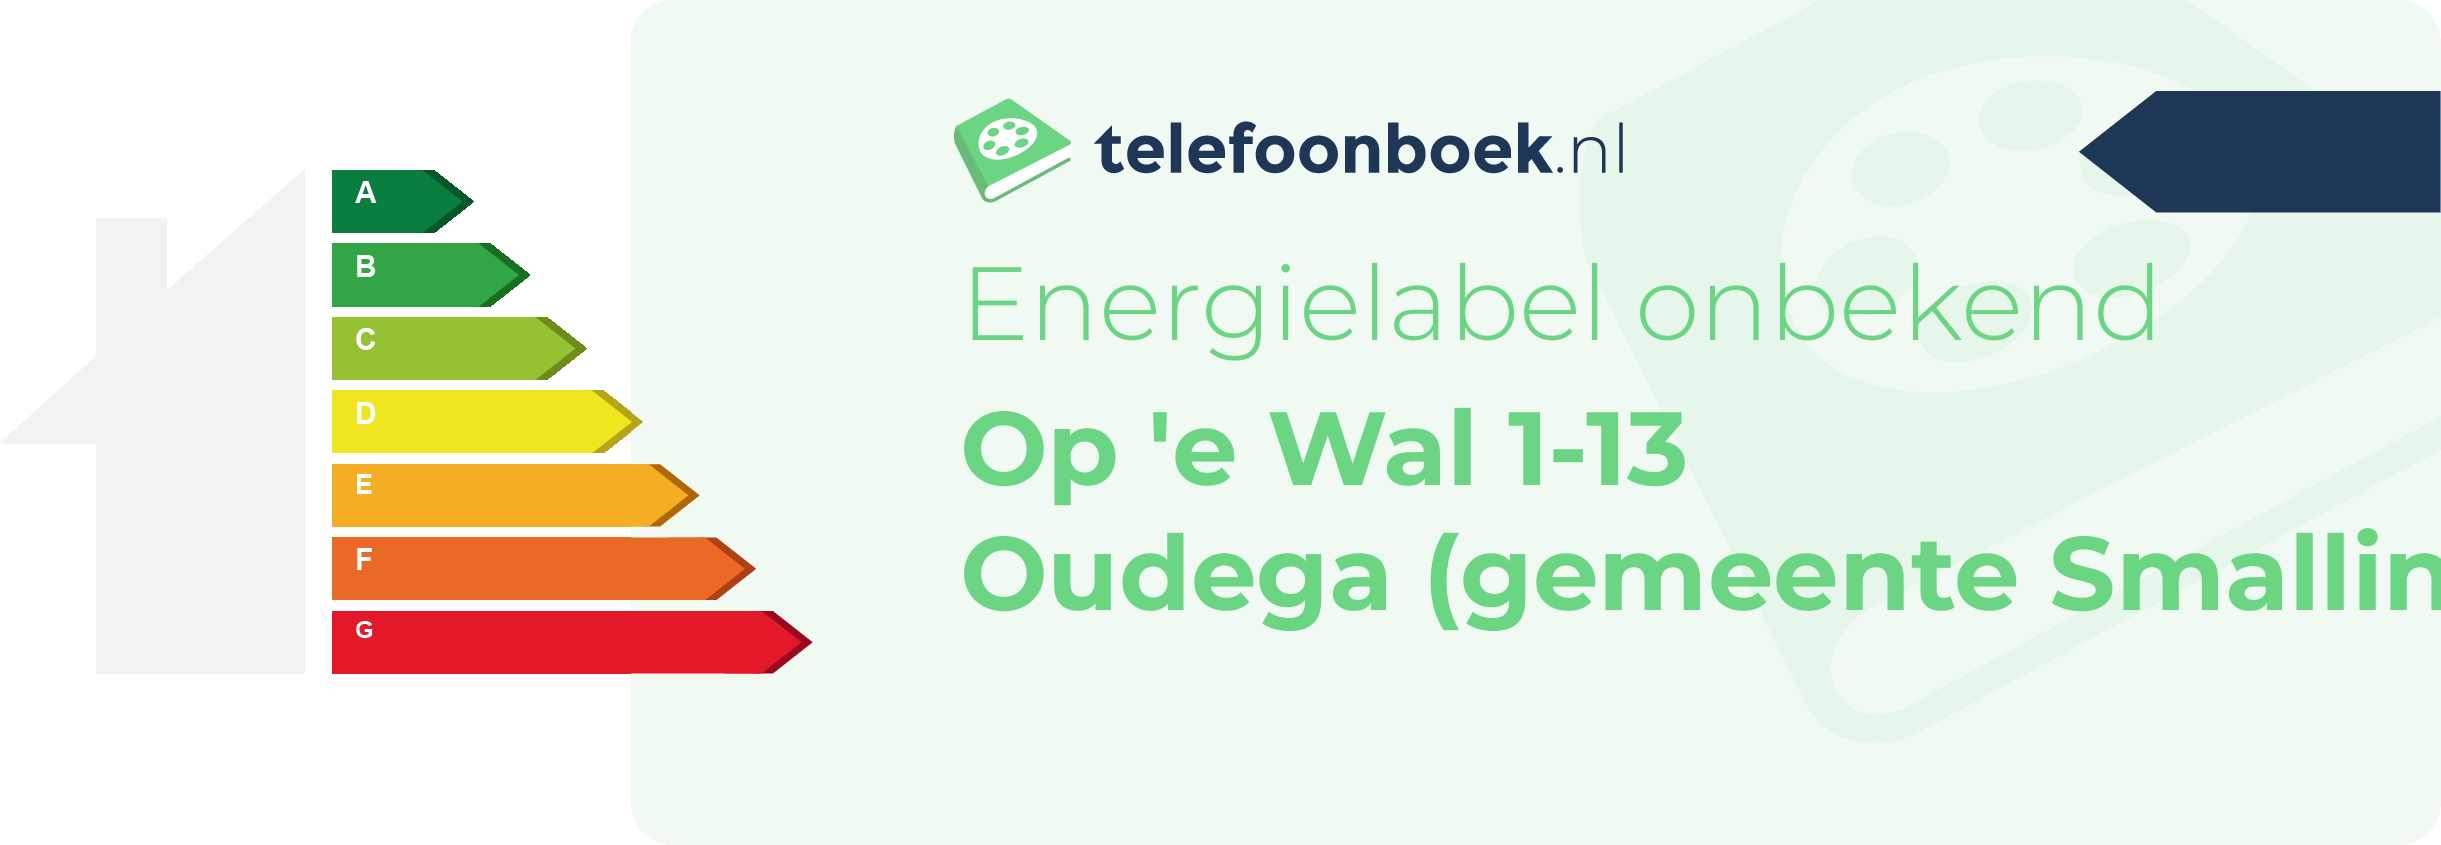 Energielabel Op 'e Wal 1-13 Oudega (gemeente Smallingerland Friesland)